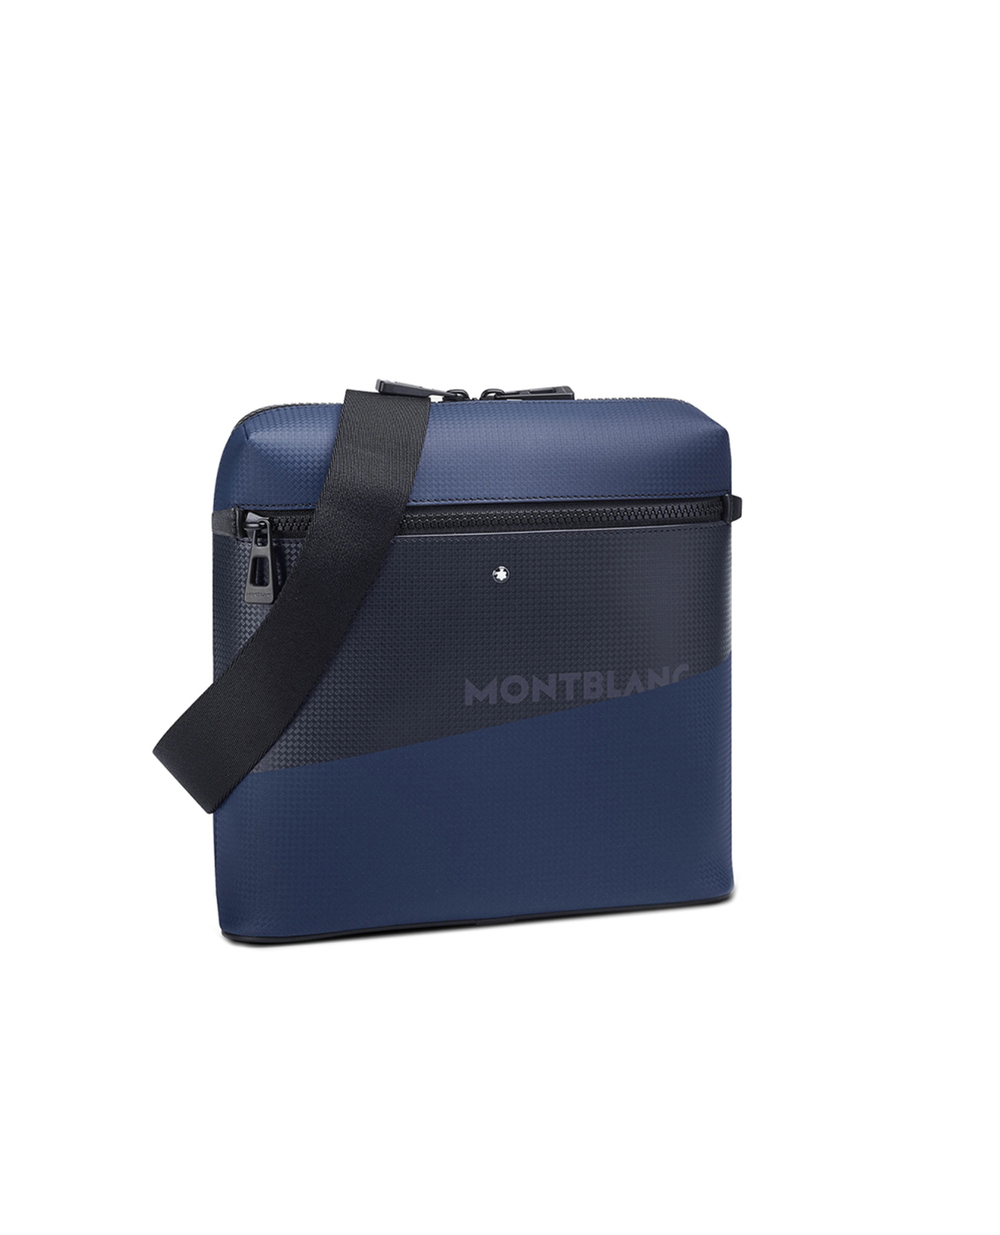 Кожаная сумка Montblanc Extreme 2.0 Envelope Montblanc 128609, синий цвет • Купить в интернет-магазине Kameron